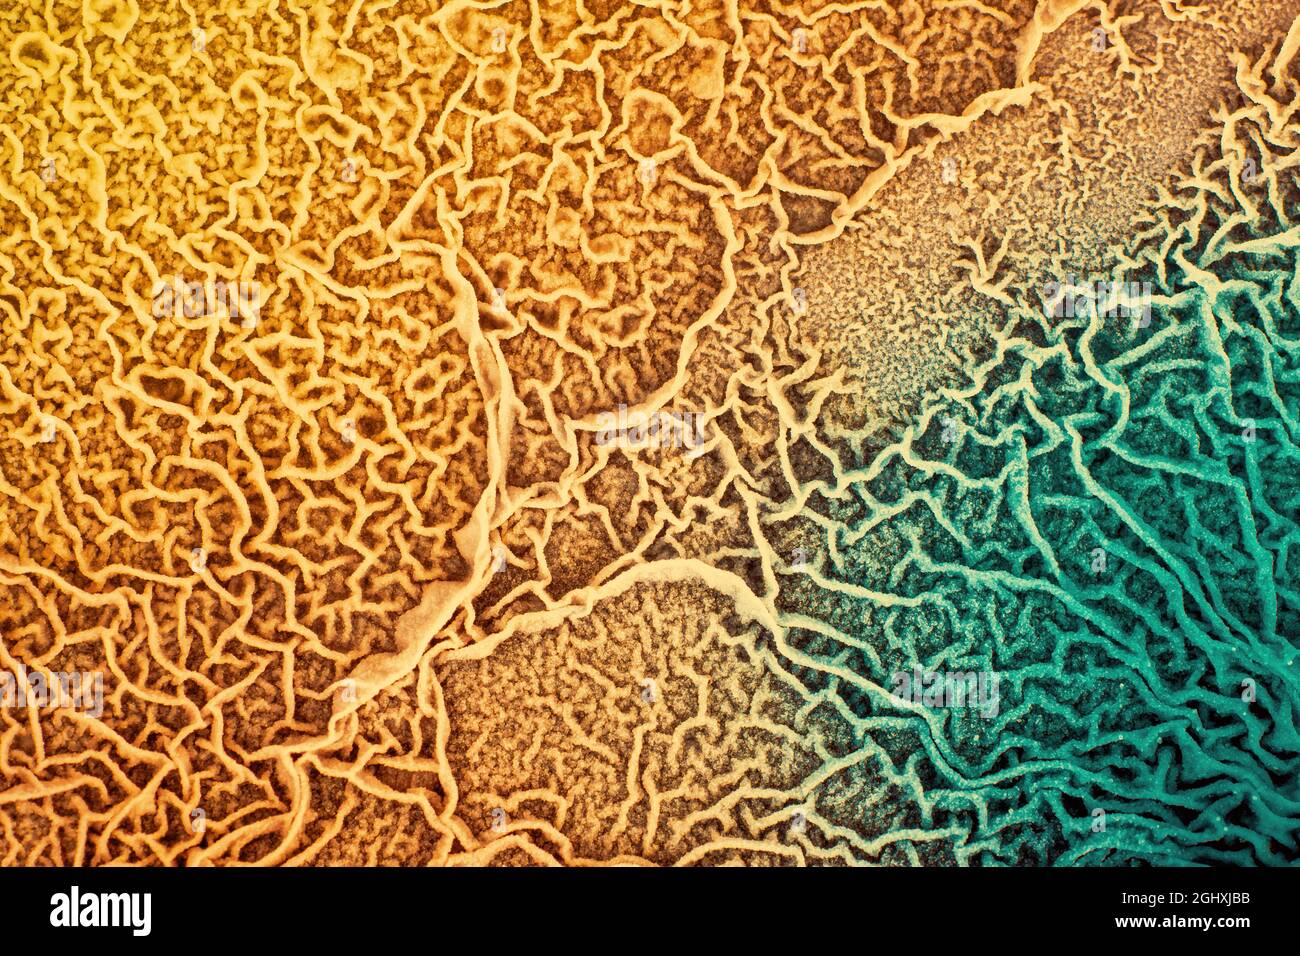 Die Oberfläche von biologischem Gewebe, das mit pathogenen Mikroorganismen infiziert ist Stockfoto